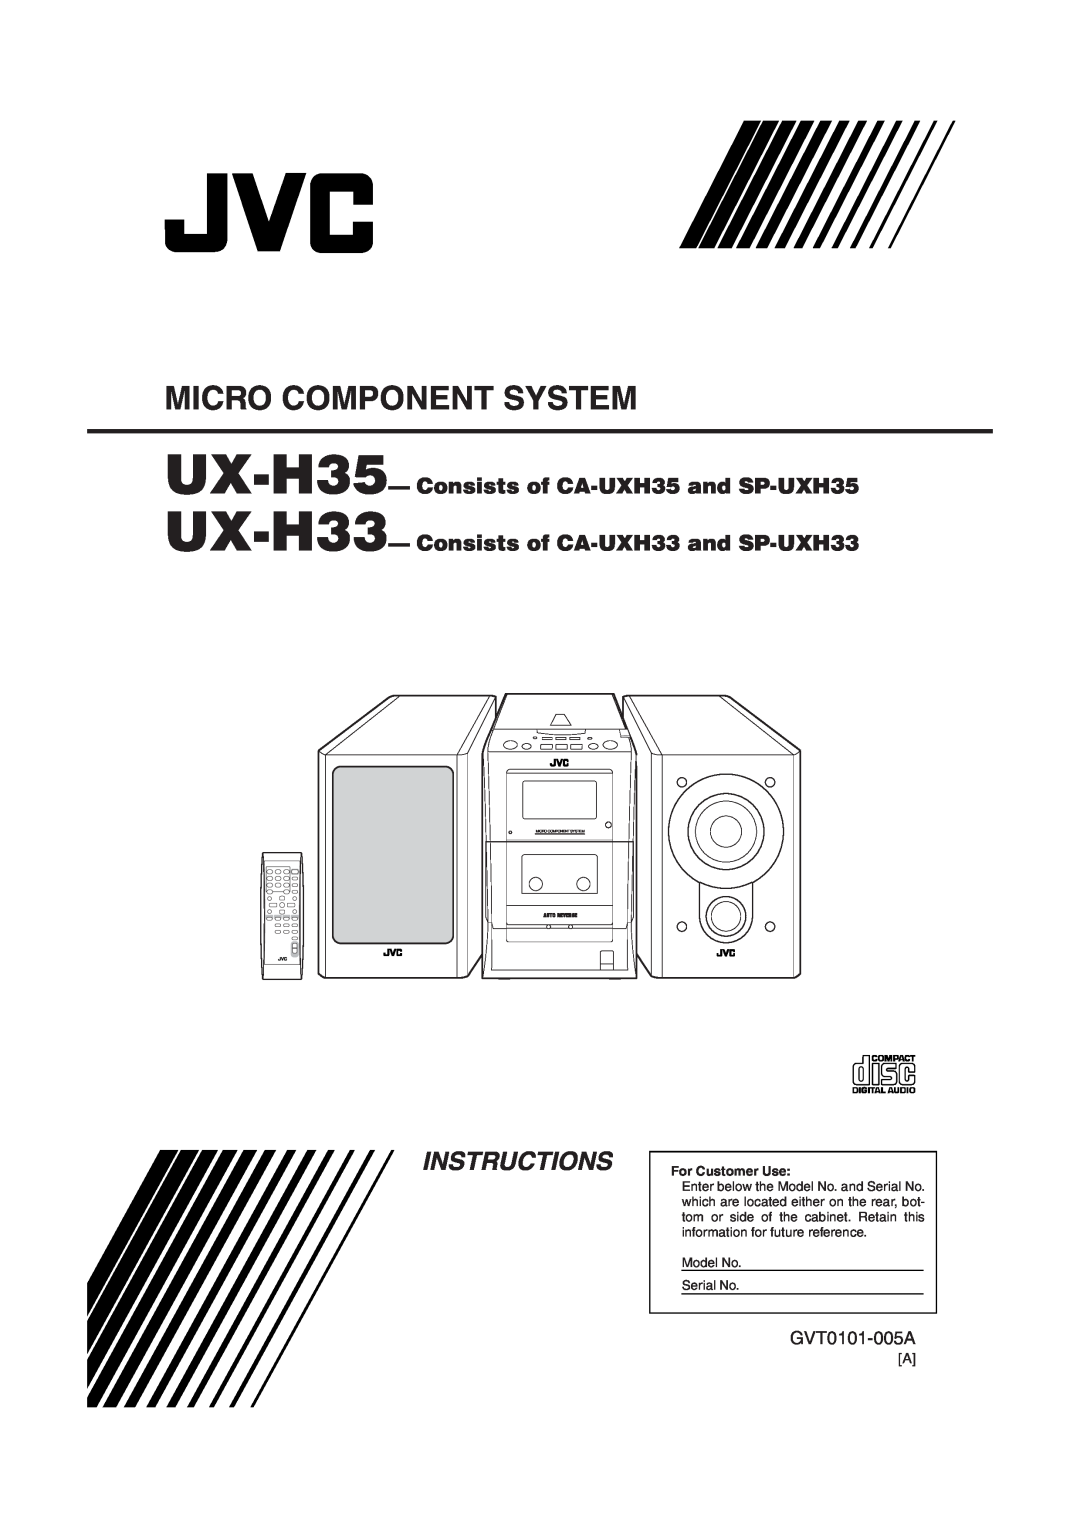 JVC manual Instructions, UX-H35-Consists of CA-UXH35and SP-UXH35, UX-H33-Consists of CA-UXH33and SP-UXH33, GVT0101-005A 